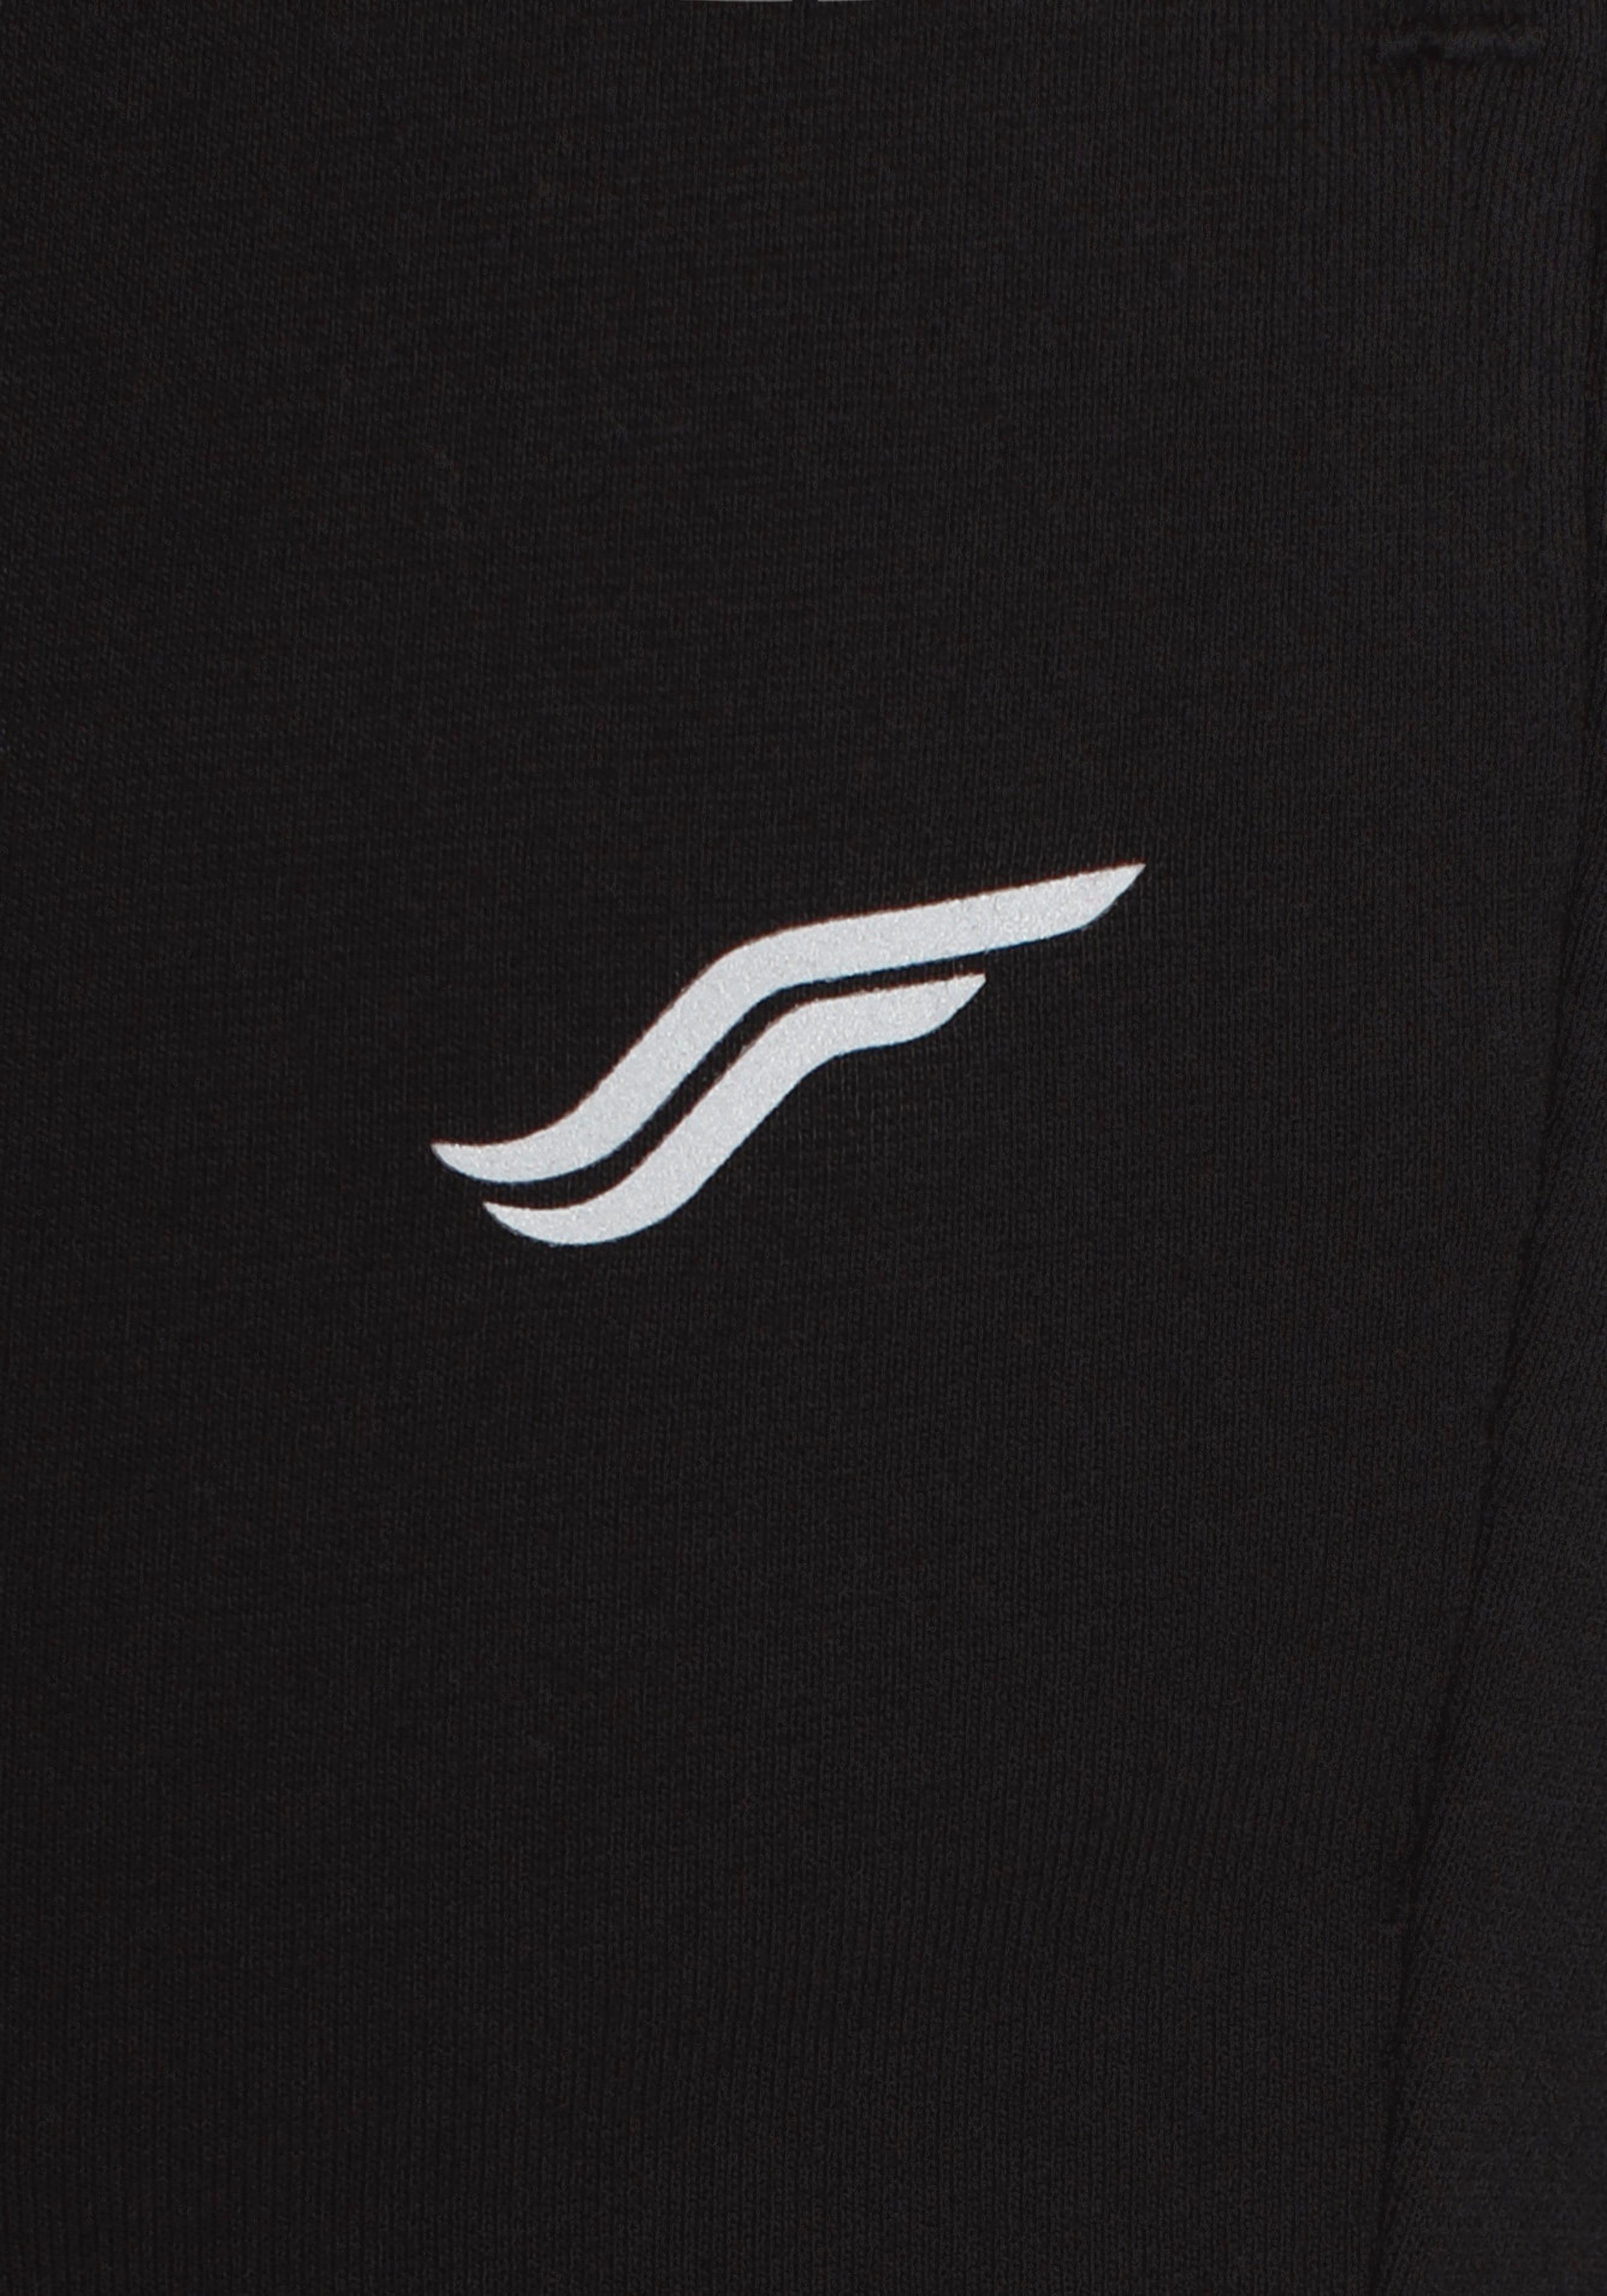 FAYN SPORTS Jogginghose Relaxed schwarz Reißverschlusstaschen mit Fit